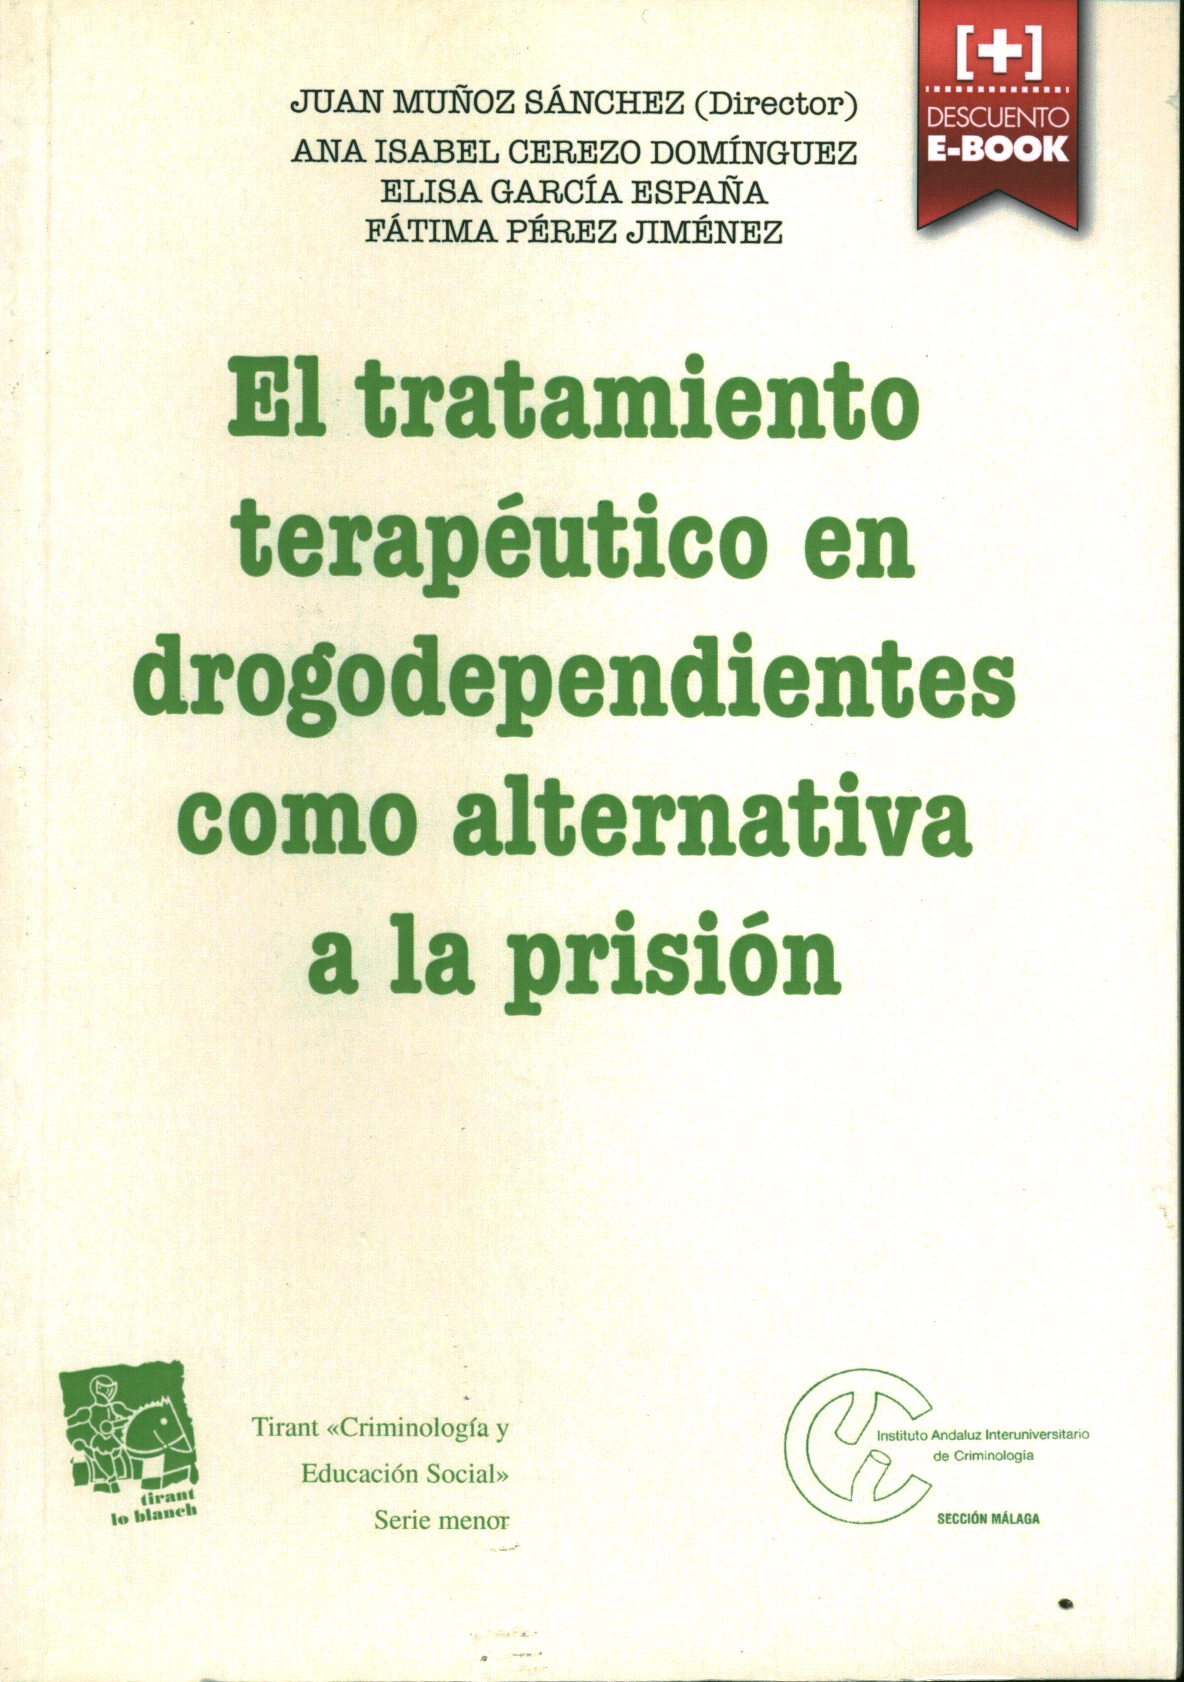 El tratamiento terapéutico en drogodependientes como alternativa a la prisión